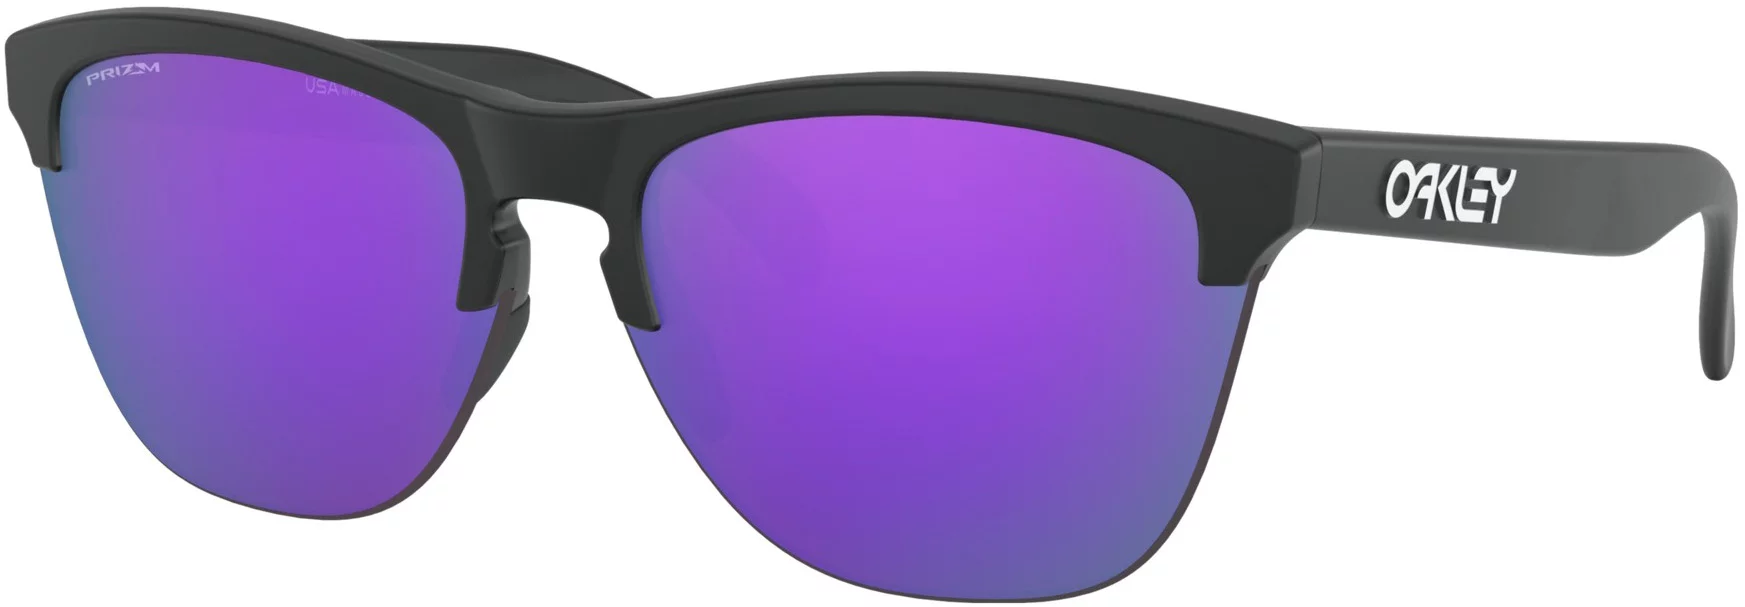 Oakley Frogskins Lite Sunglasses - matte black/prizm violet lens - Free  Shipping | Tactics